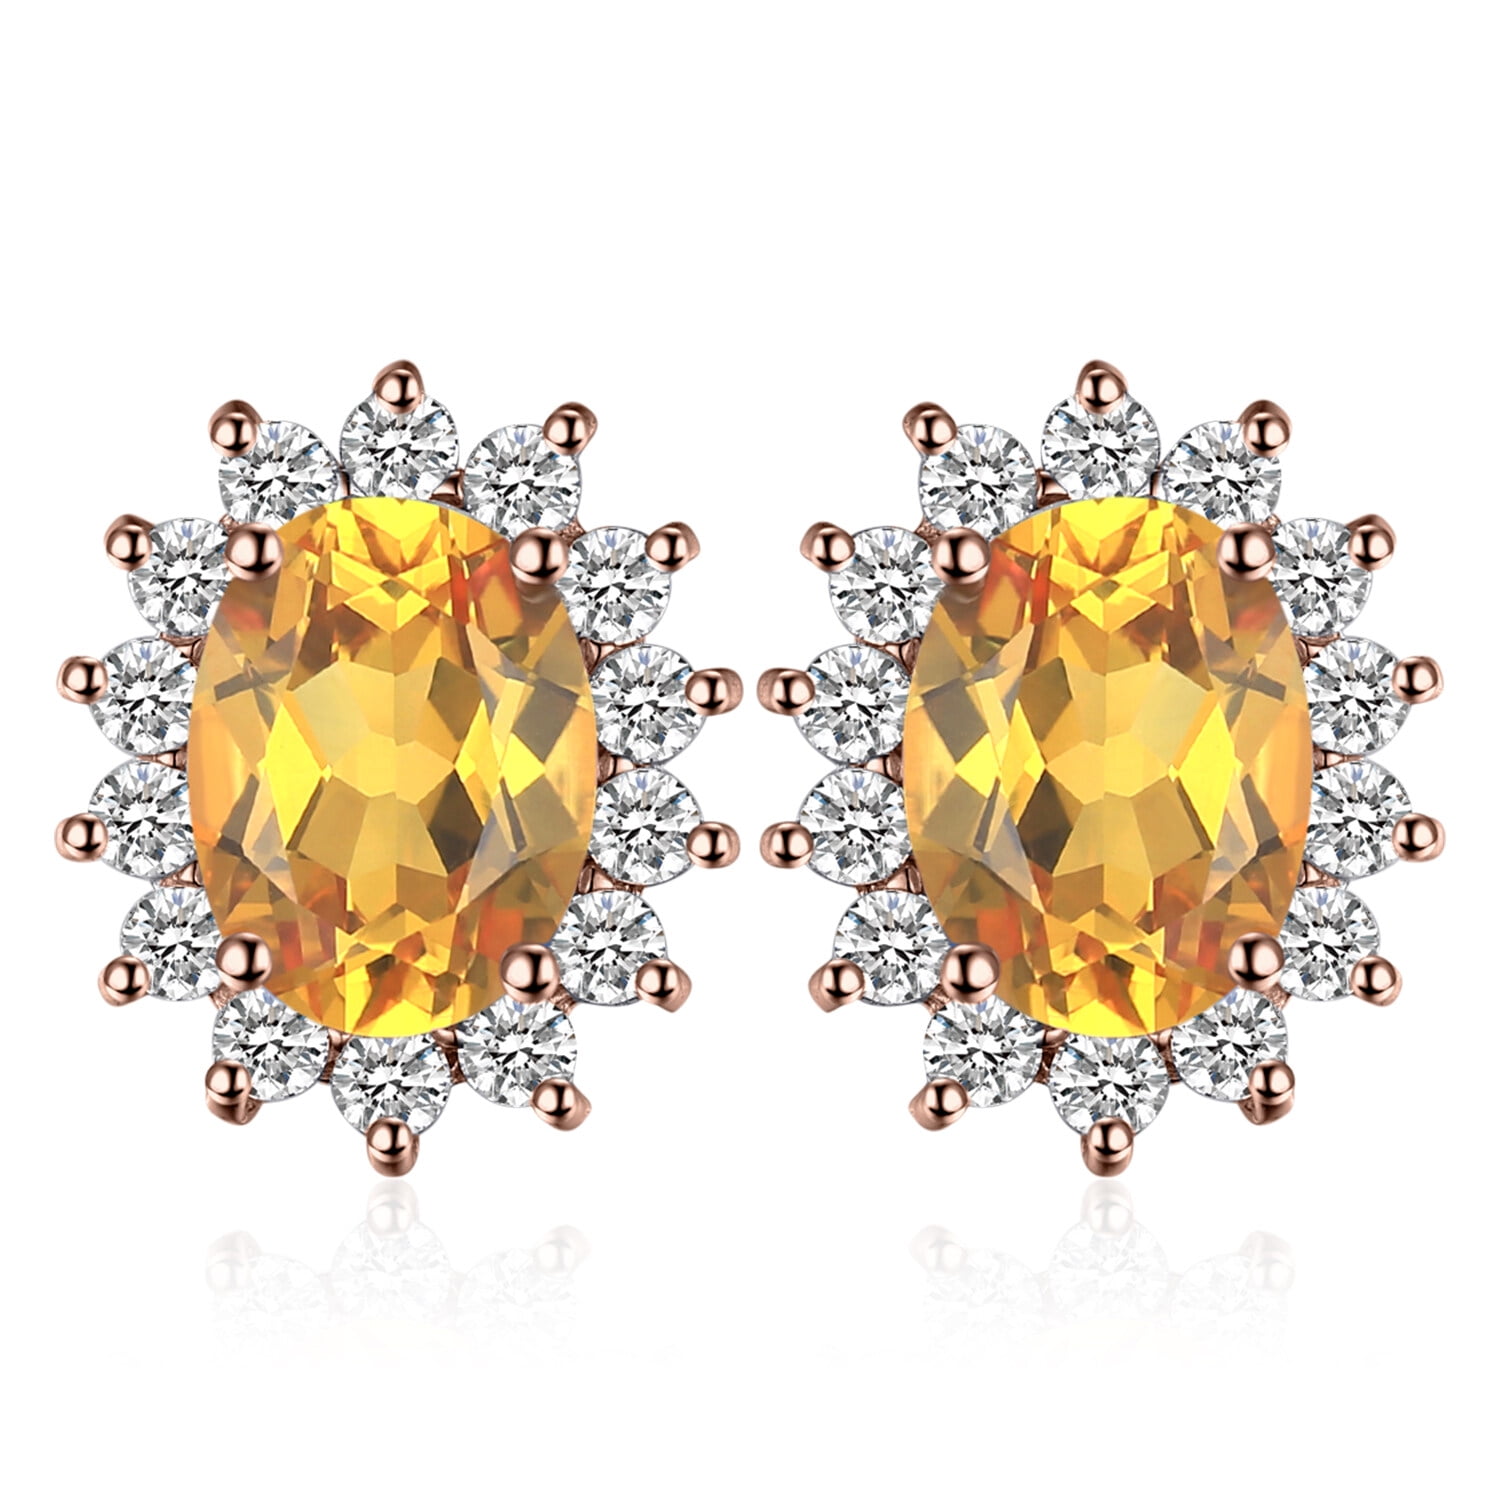 Blooming earrings Louis Vuitton Gold in Metal - 36028299